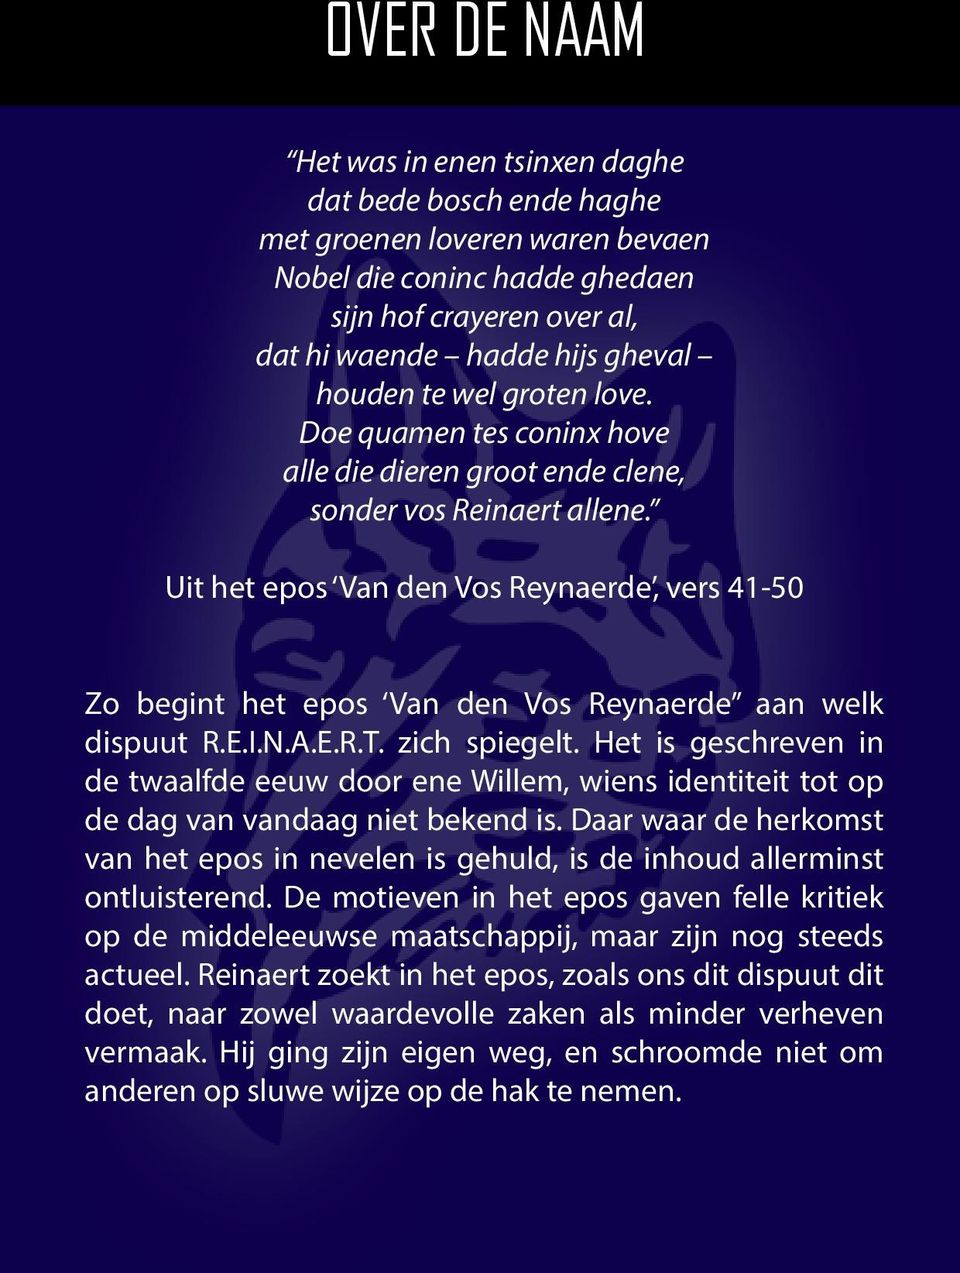 Uit het epos Van den Vos Reynaerde, vers 41-50 Zo begint het epos Van den Vos Reynaerde aan welk dispuut R.E.I.N.A.E.R.T. zich spiegelt.